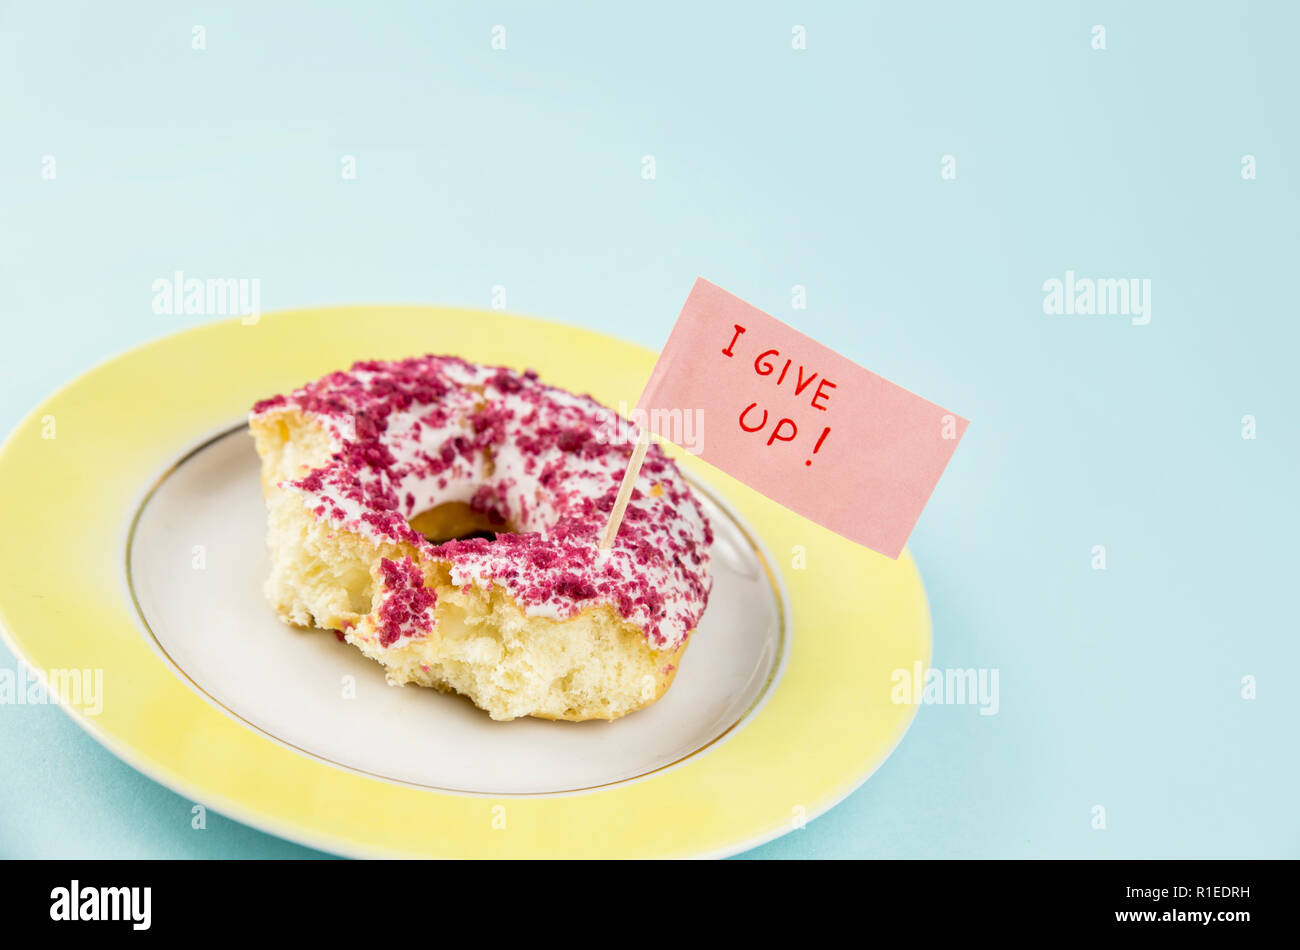 À moitié mangé donut avec glaçage rose et blanc sur plaque jaune avec remise d'un drapeau texte : J'abandonne, sur fond bleu. Studio shot conceptuel de nous Banque D'Images